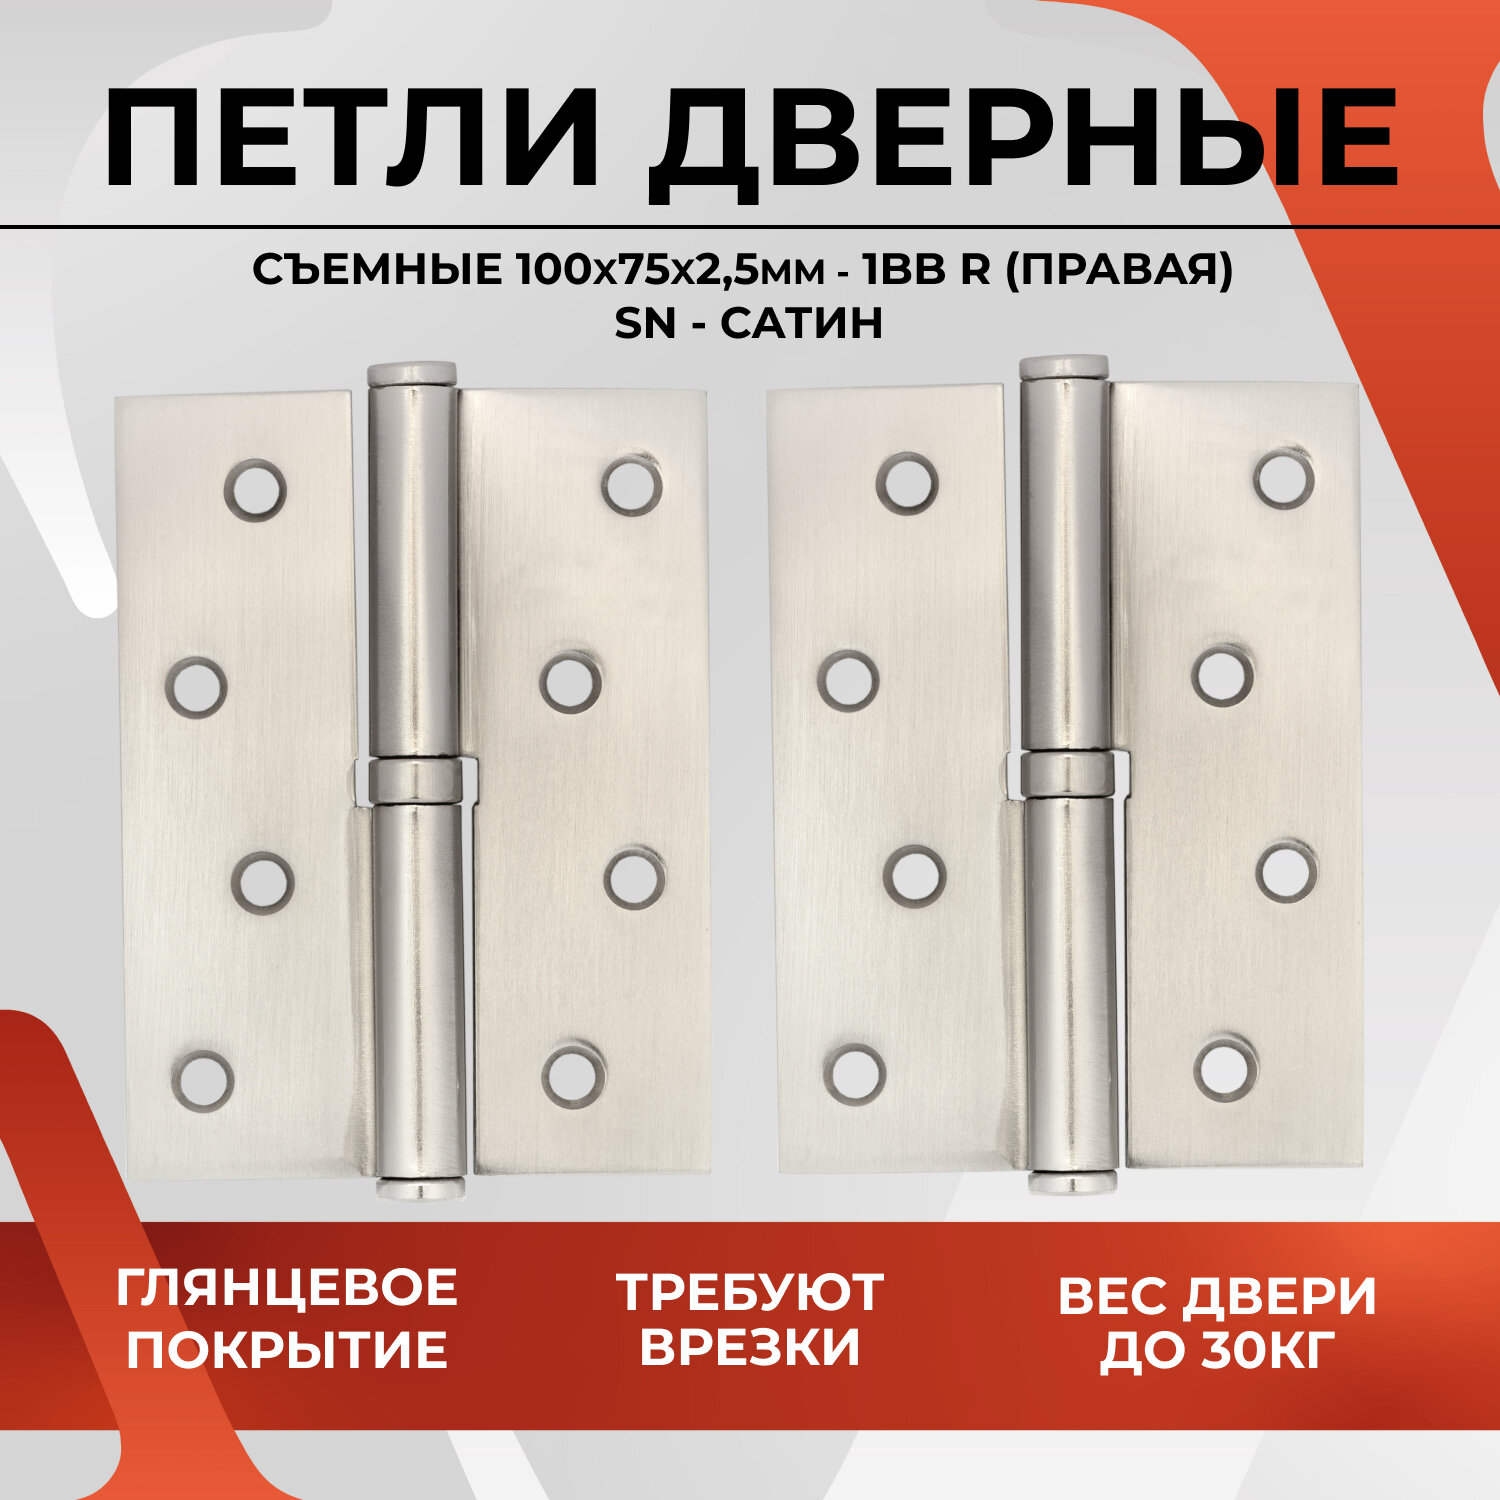 Петли дверные съемные VETTORE 100 75 2.5mm-1BB AB-R (правая) (Бронза) навесы для входных и межкомнатных дверей